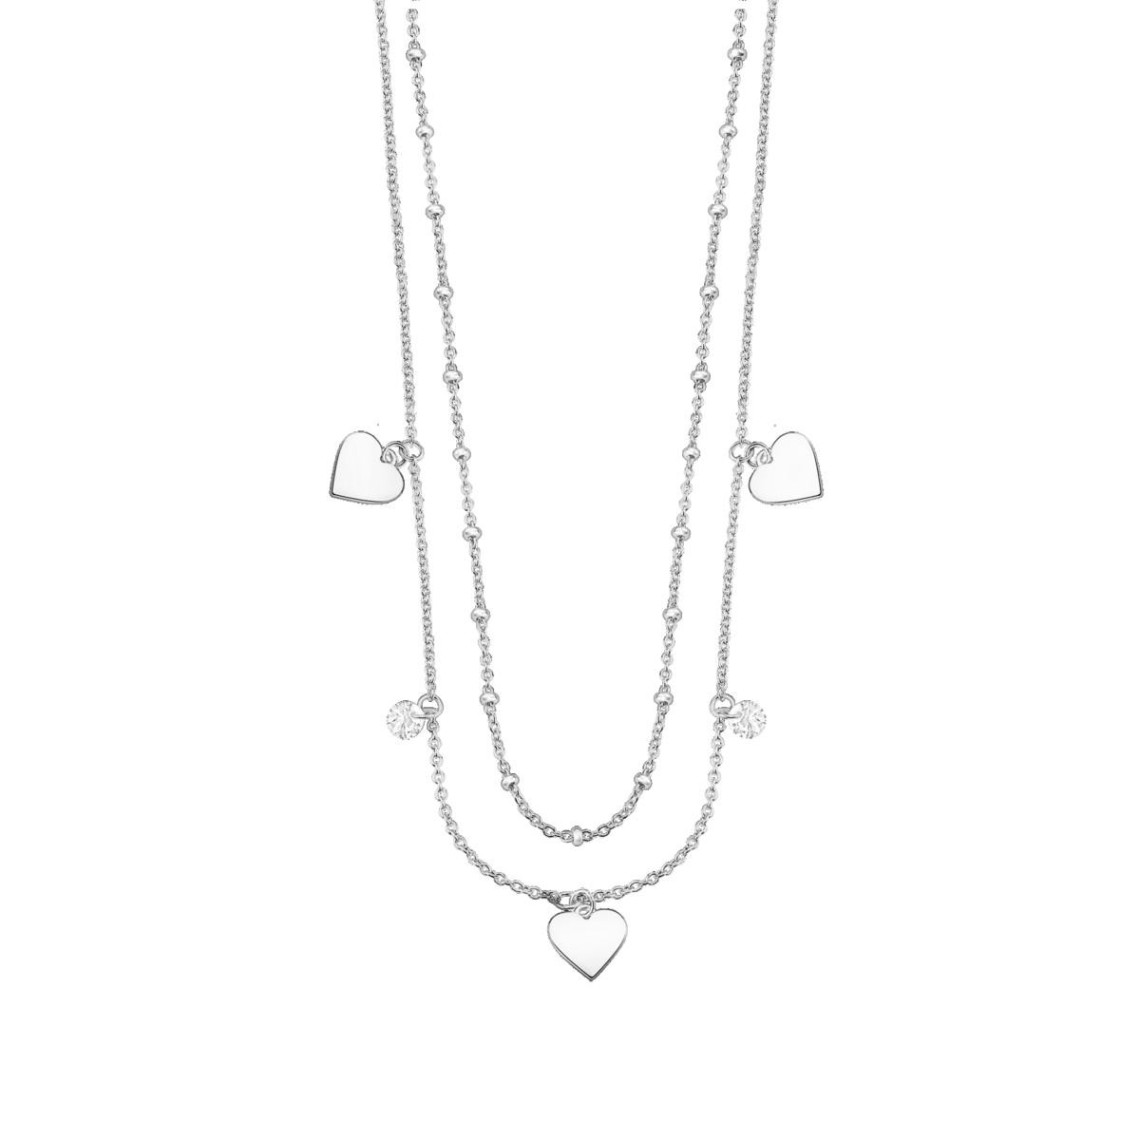 collier femme lotus silver - lp3005-1-1 argent